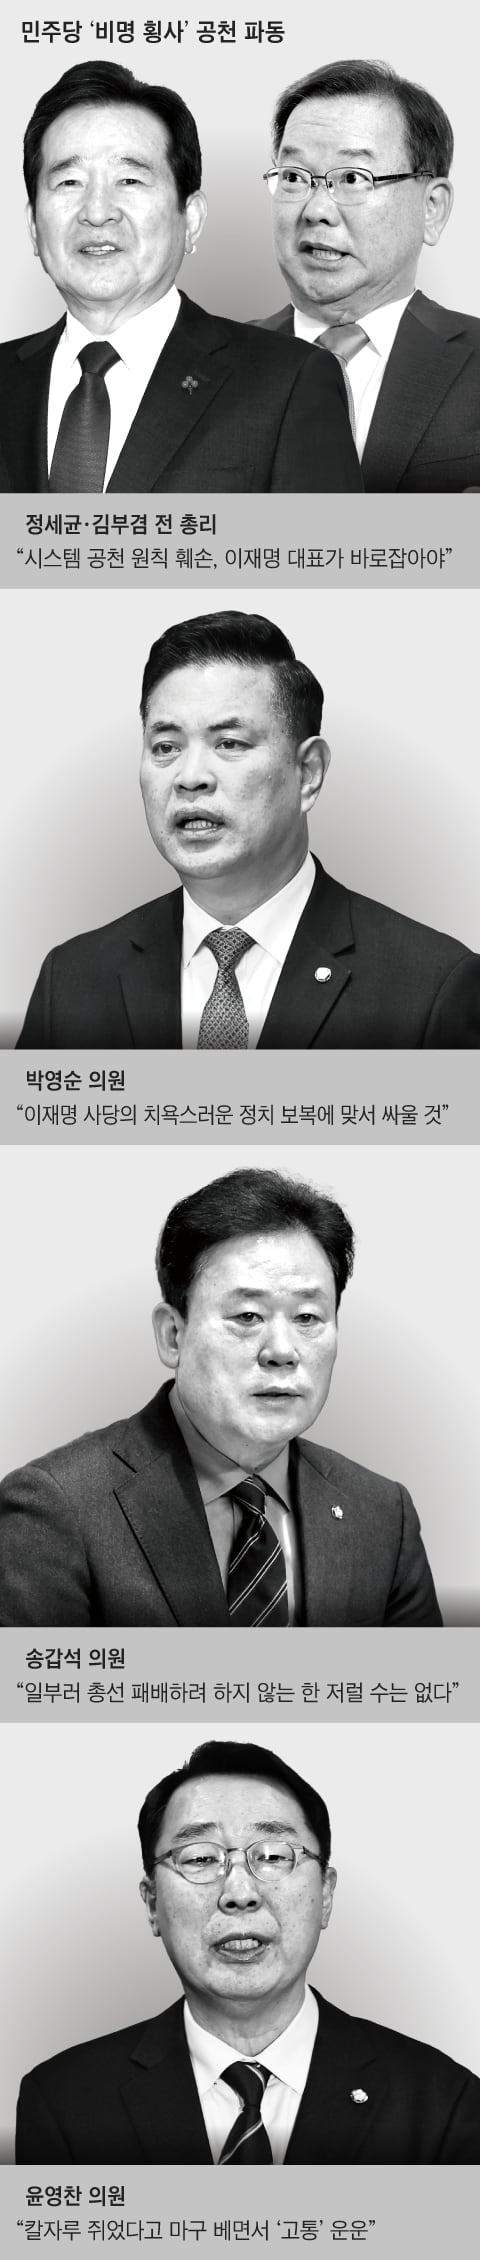 ‘이재명 사퇴론’ 번진 공천파동… 前총리·국회의장도 비판